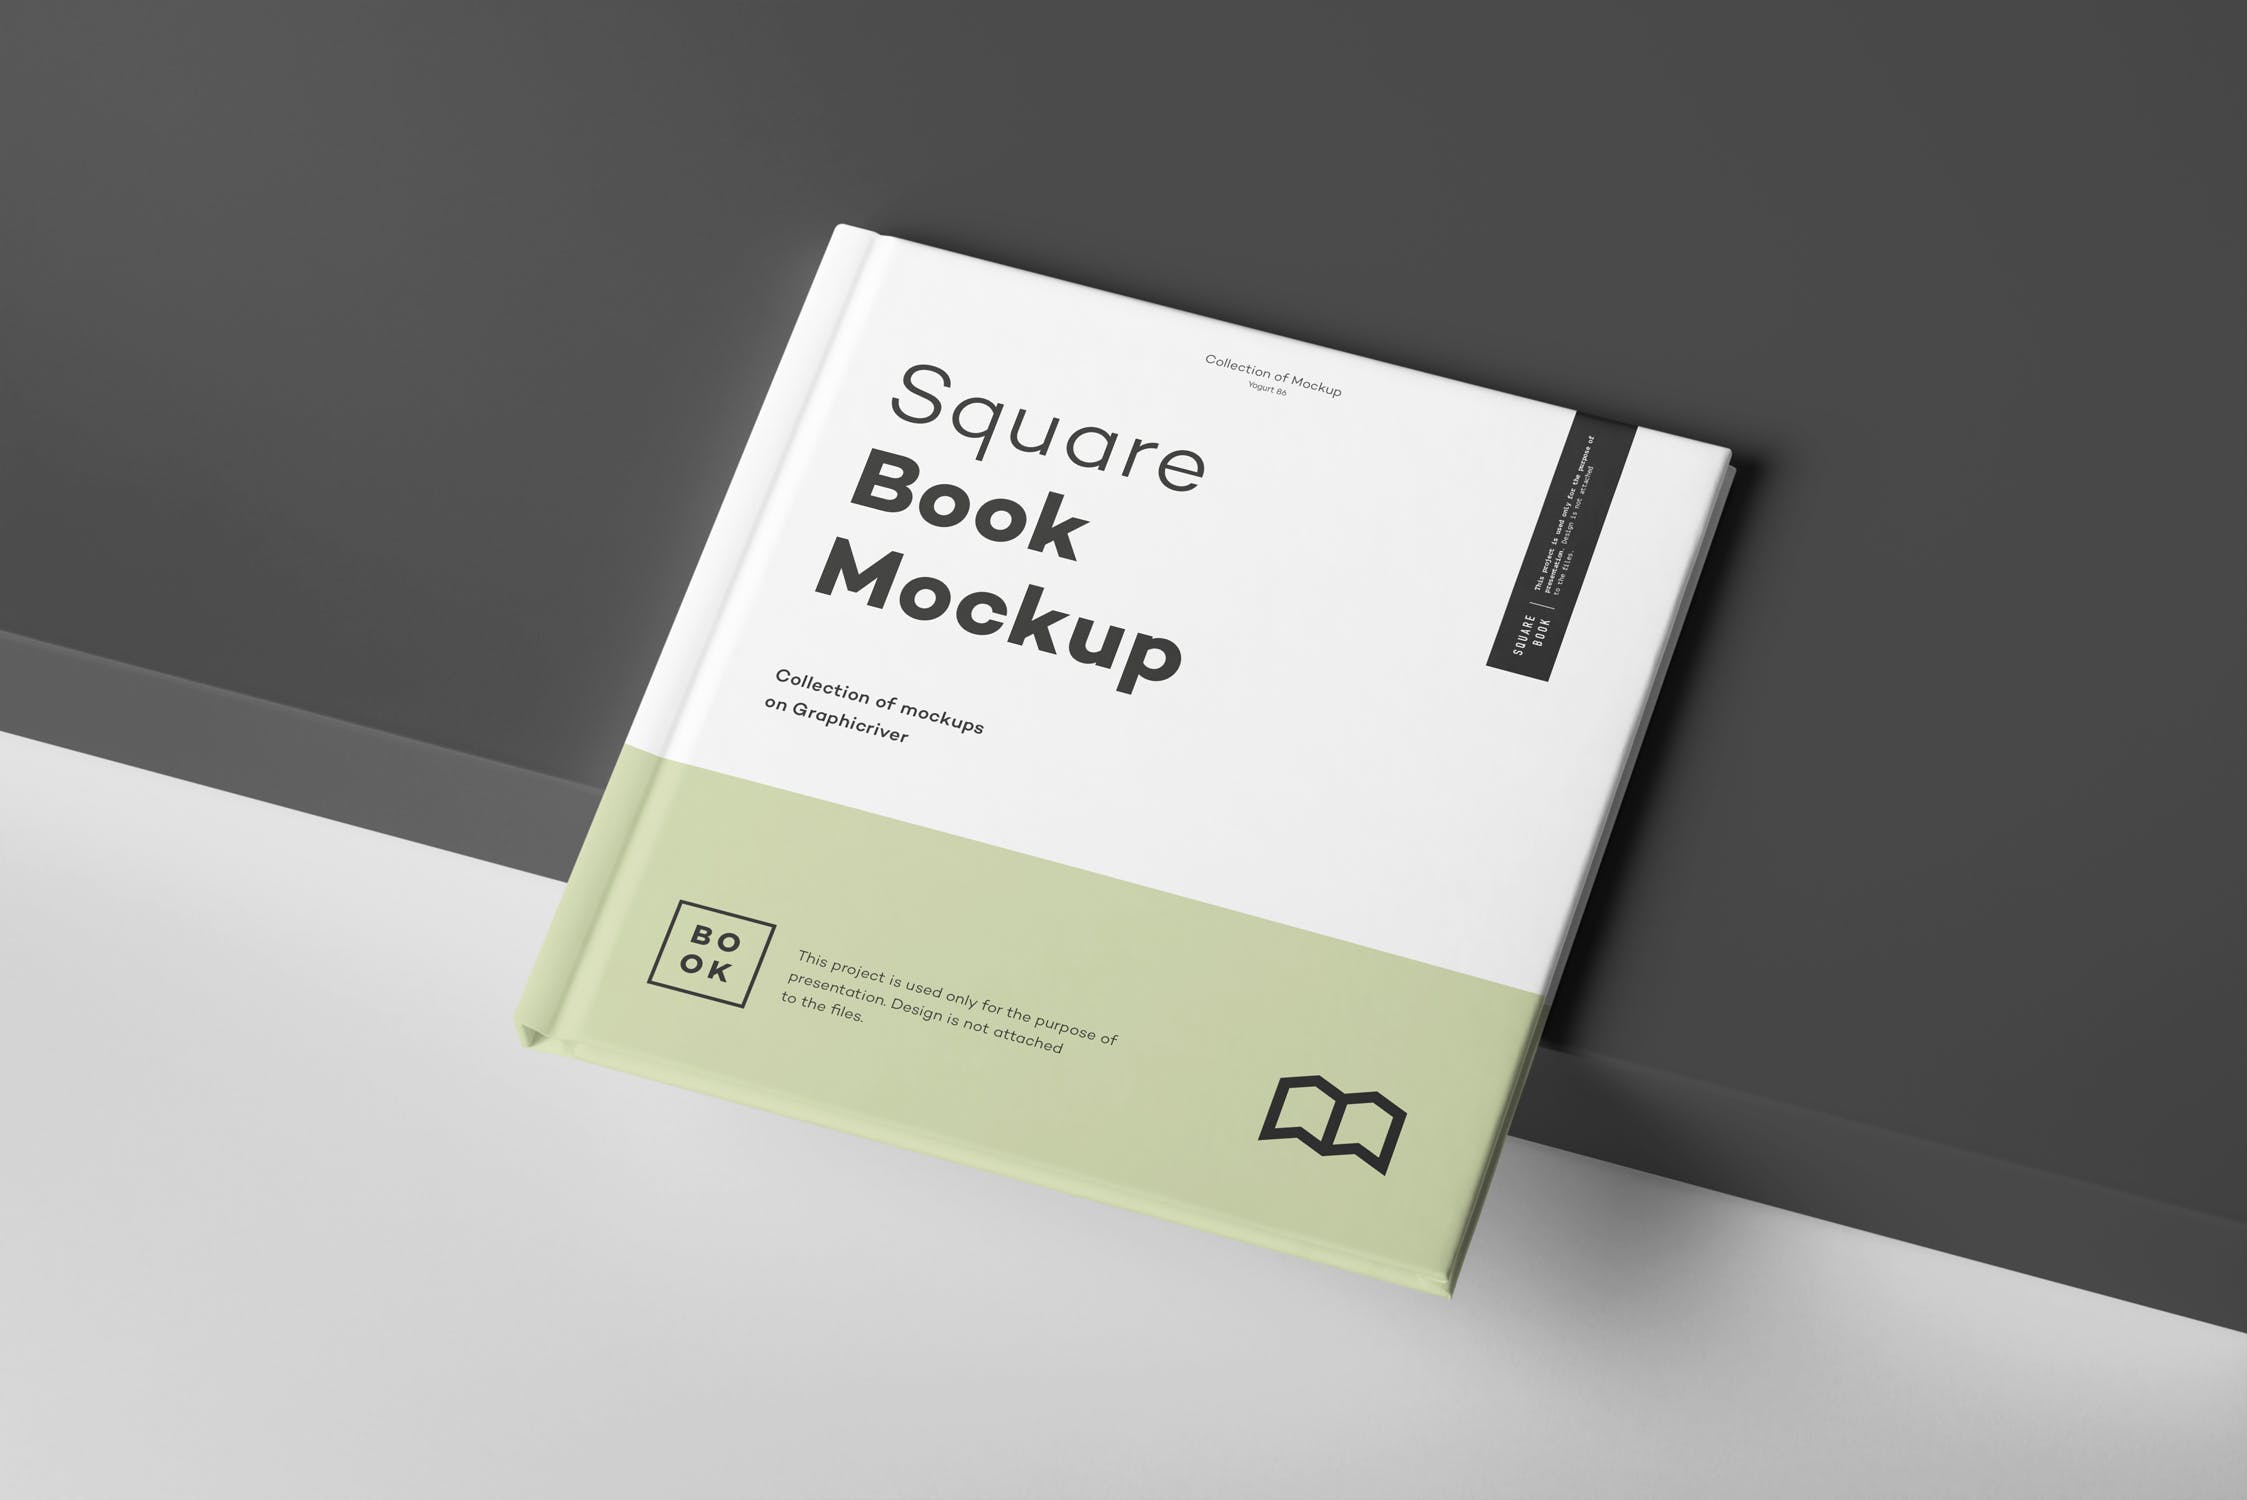 方形精装图书封面内页版式设计预览样机squarebookmockup2